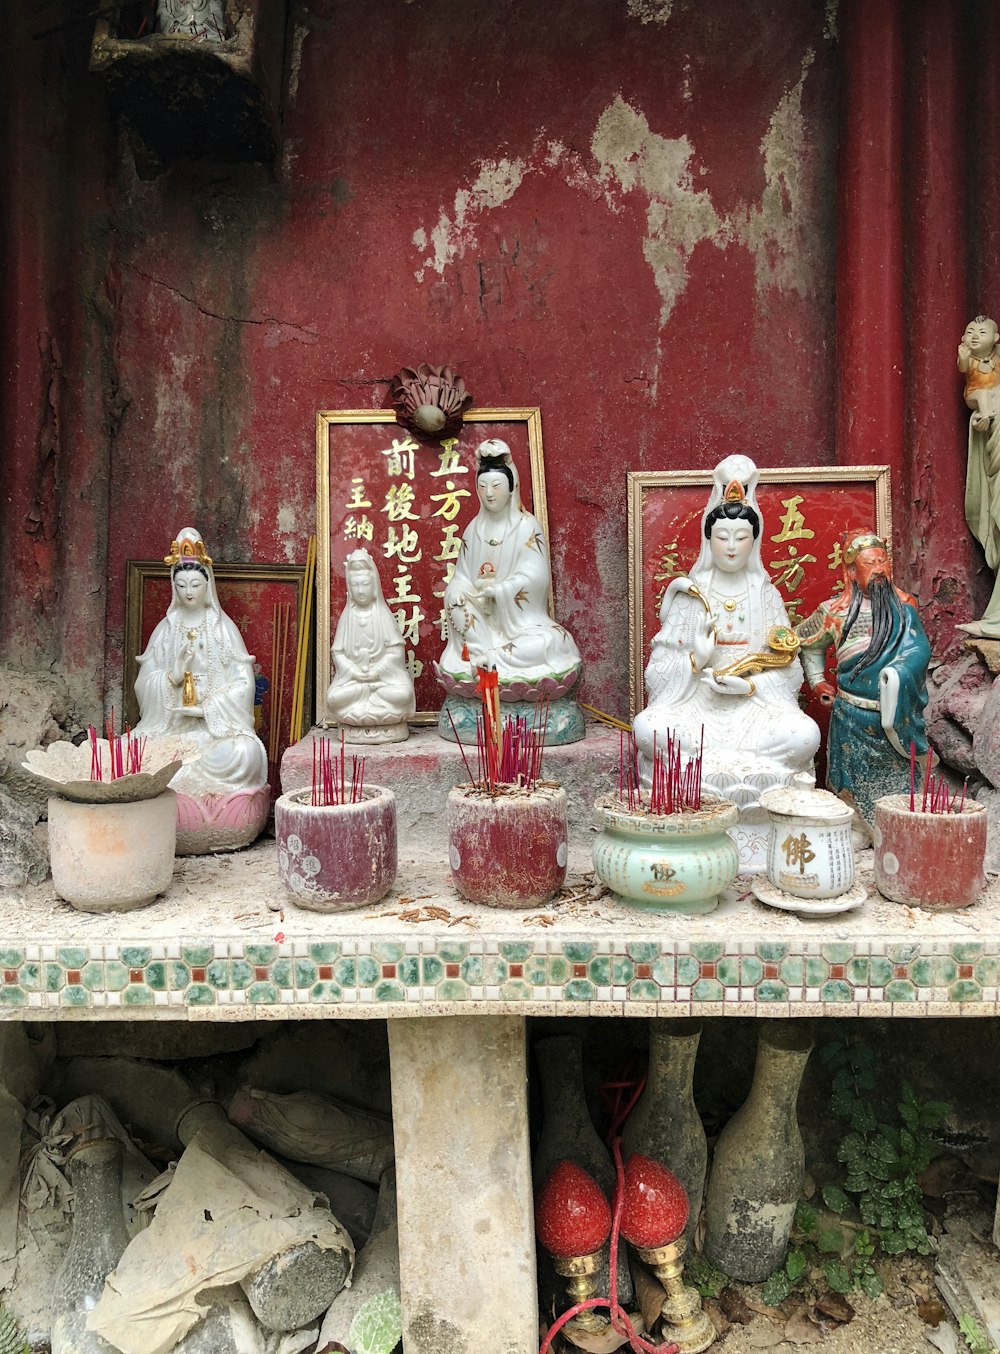 cinco figurillas de cerámica variadas de dioses hindúes